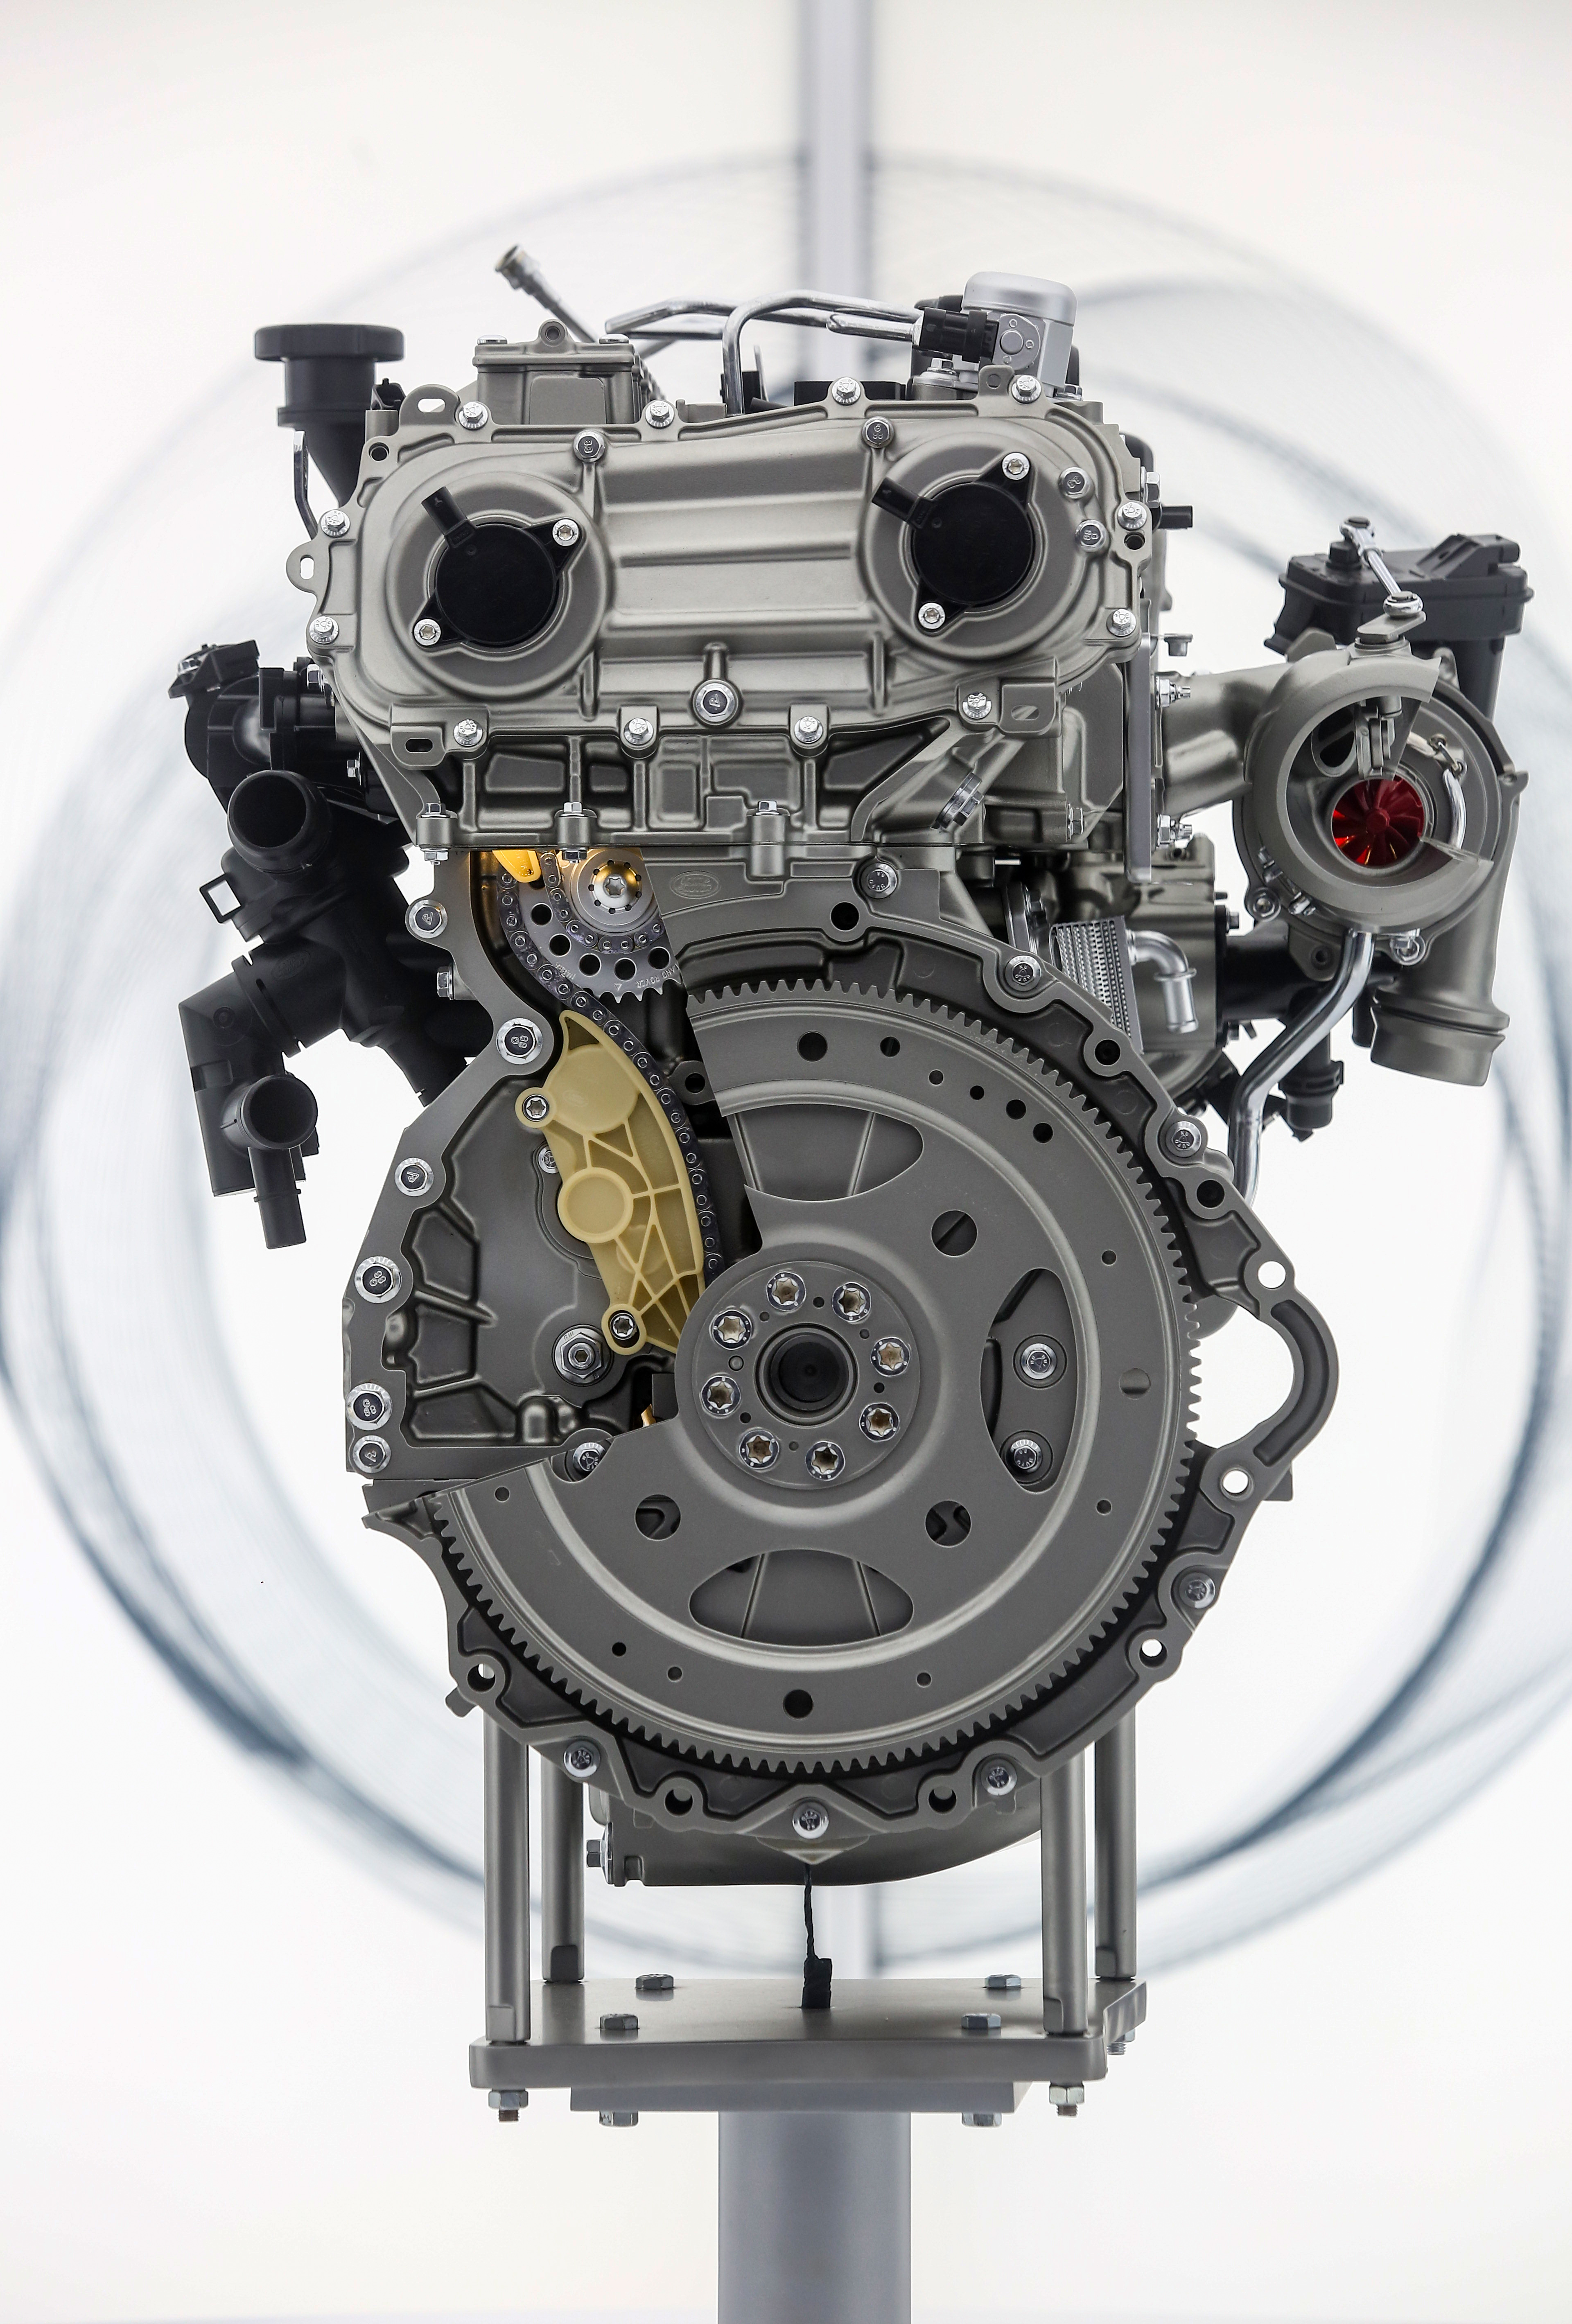 全新Ingenium2.0升四缸发动机搭载于捷豹XFL、路虎揽胜极光、路虎发现神行三款焕“芯”一代车型